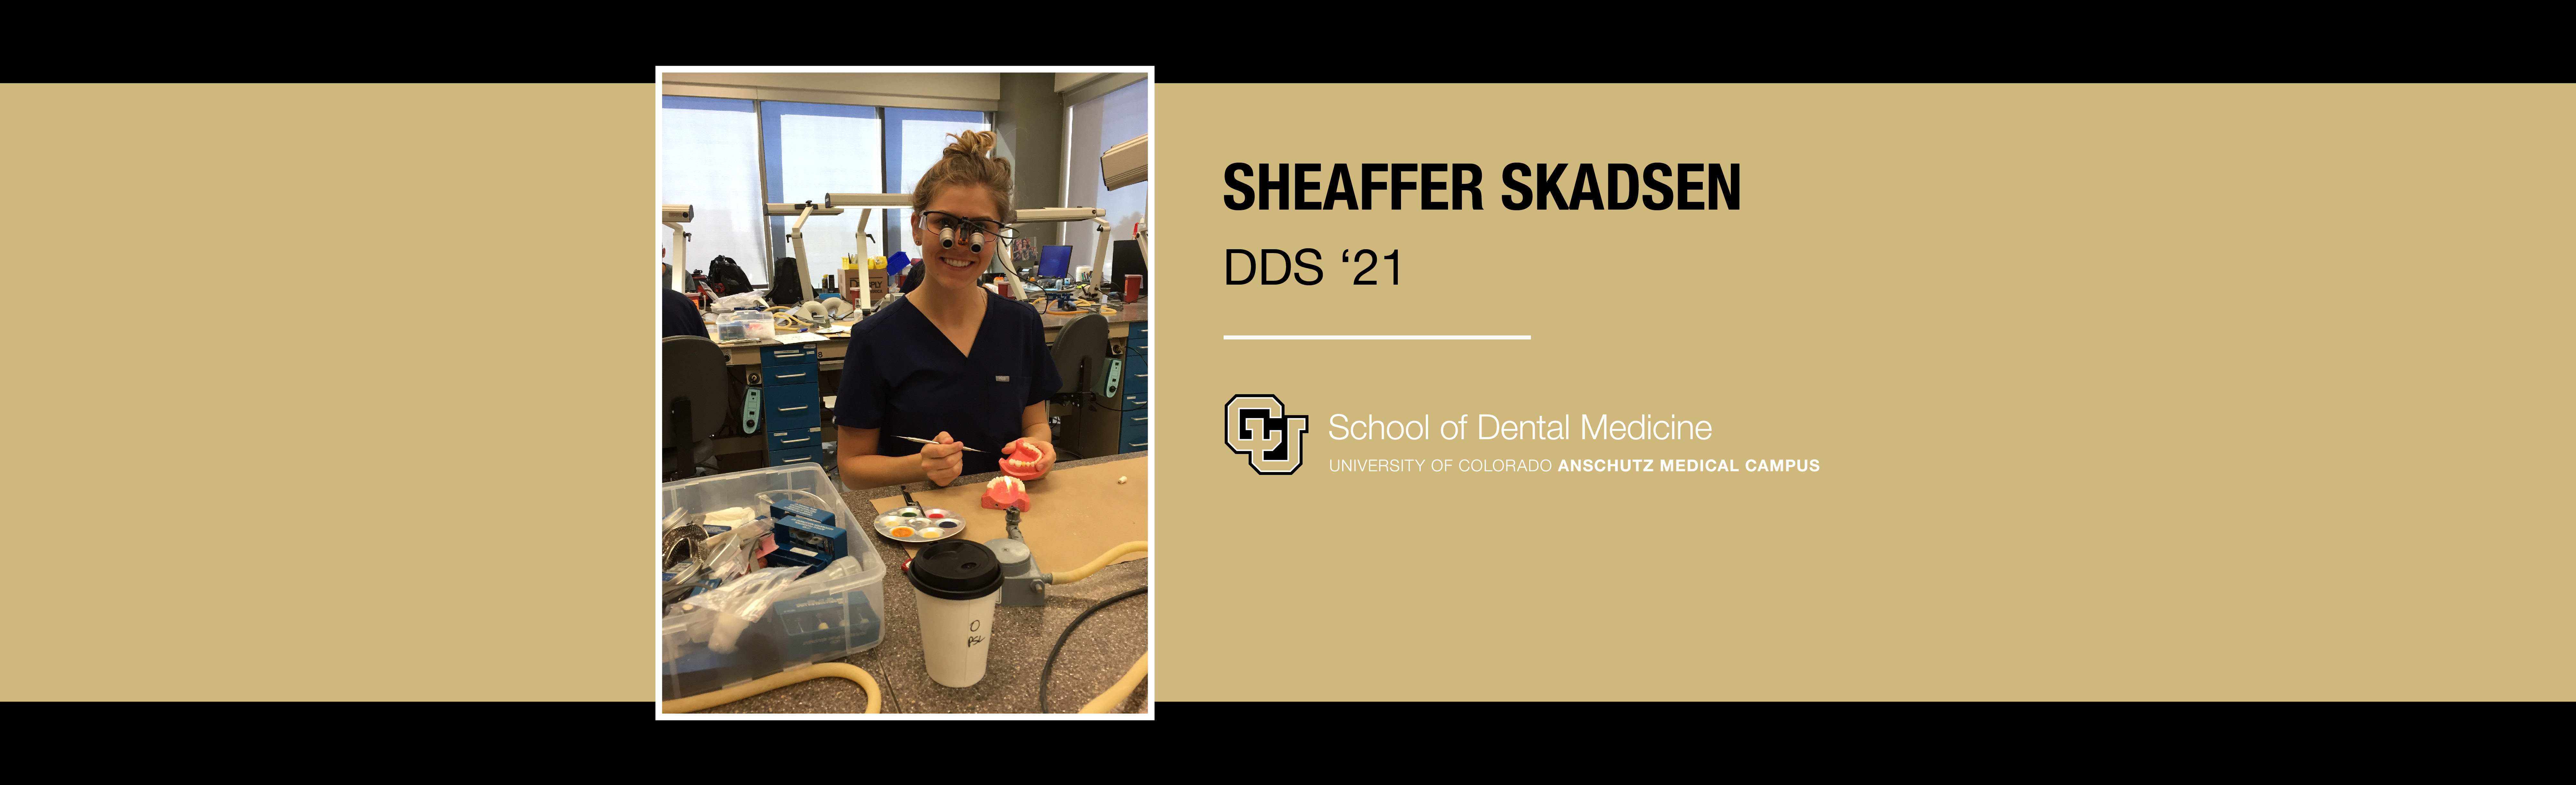 Sheaffer Skadsen照片在牙科实验室旁边的文字她的名字和CU标志